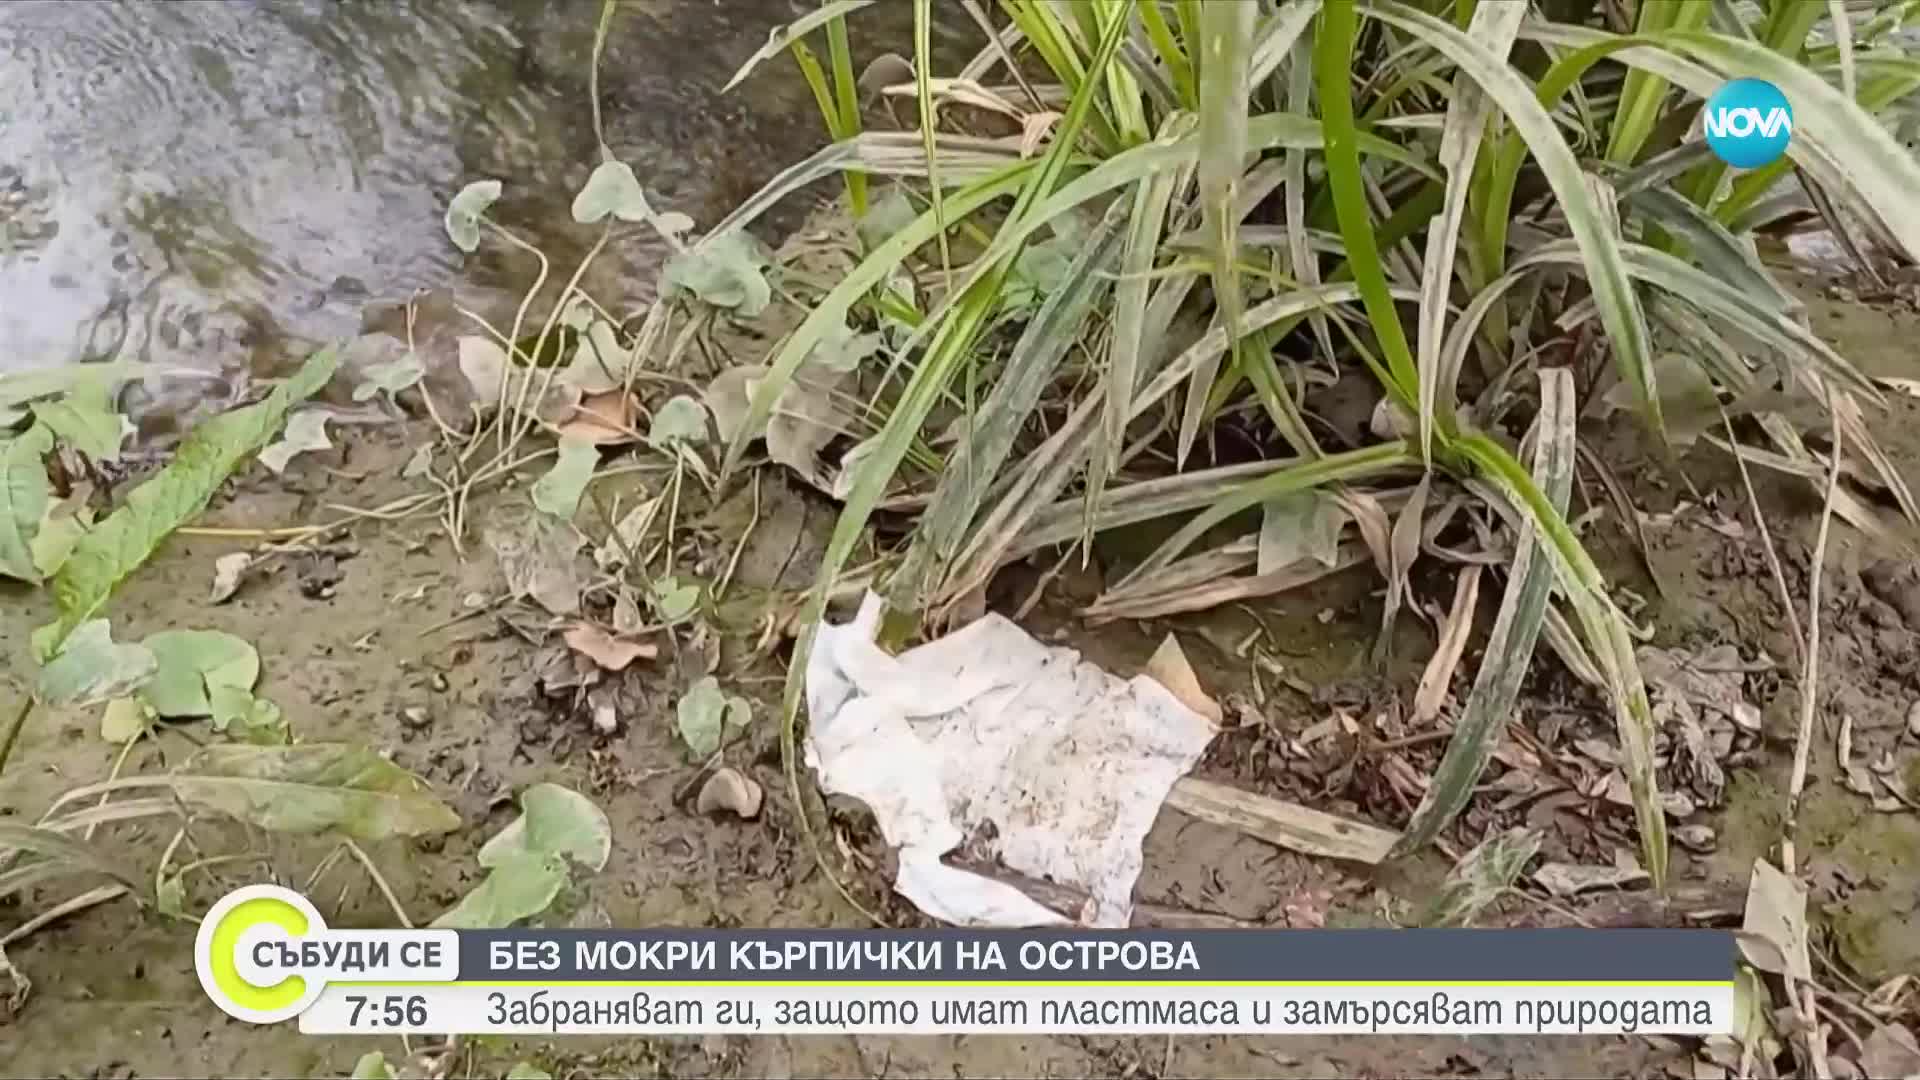 Забраняват мокрите кърпички на Острова, съдържат пластмаса